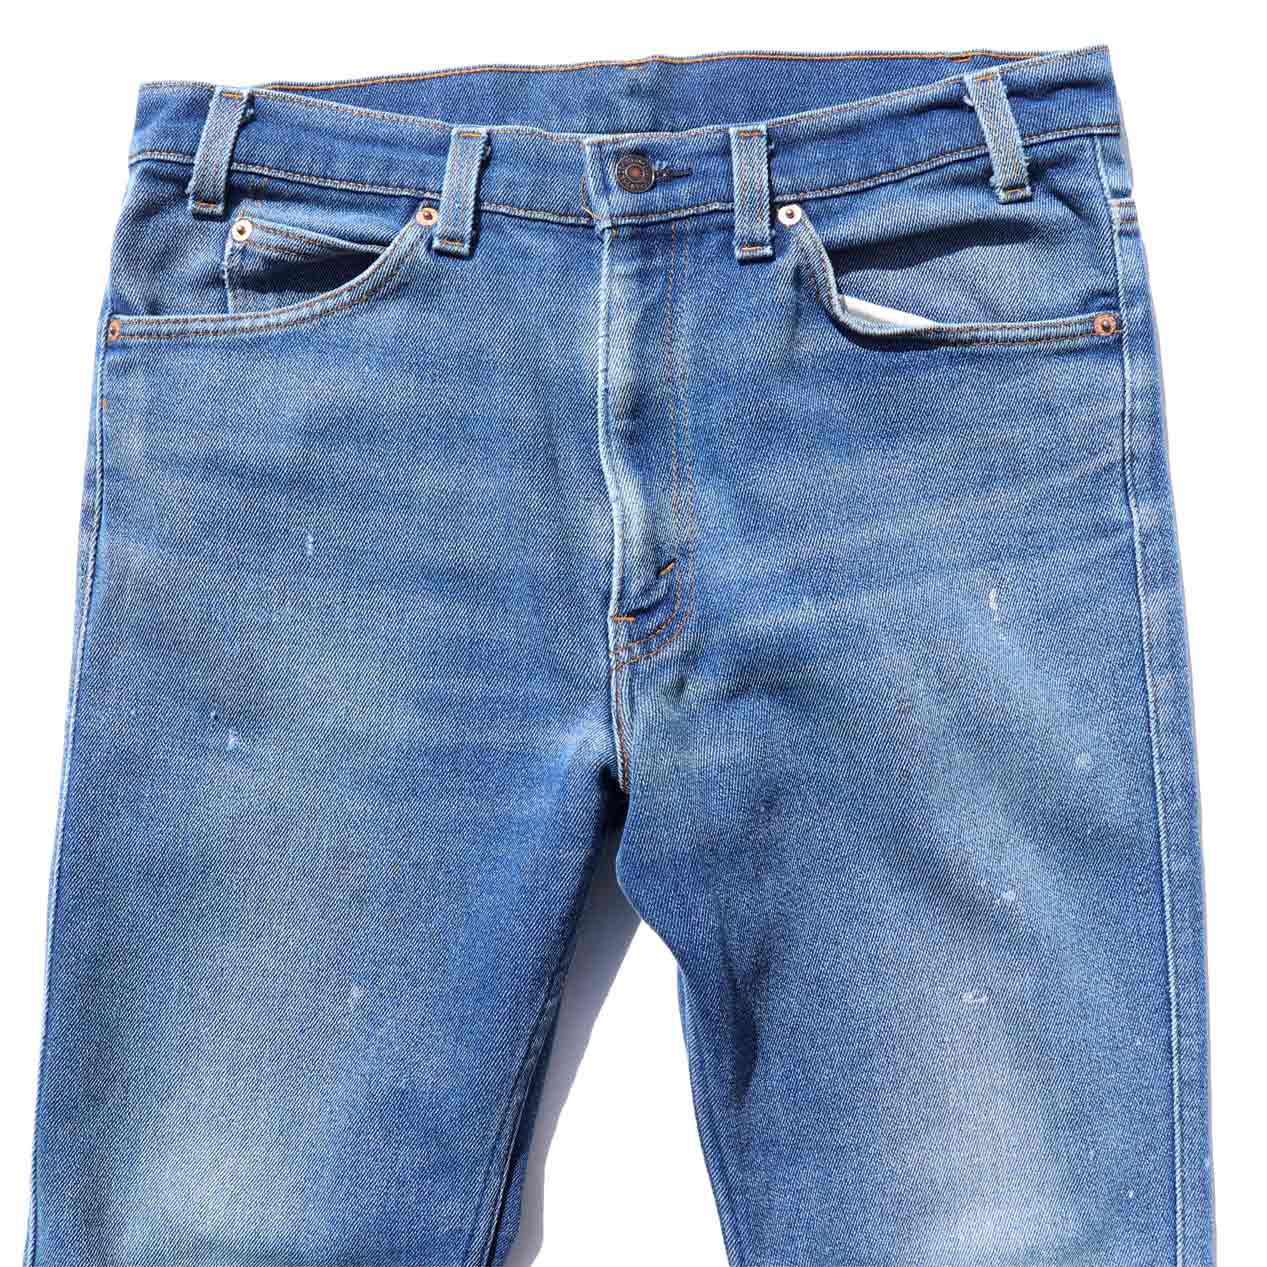 POST JUNK / 90's LEVI'S 517 Stretch Denim Pants Made In U.S.A. [W34]